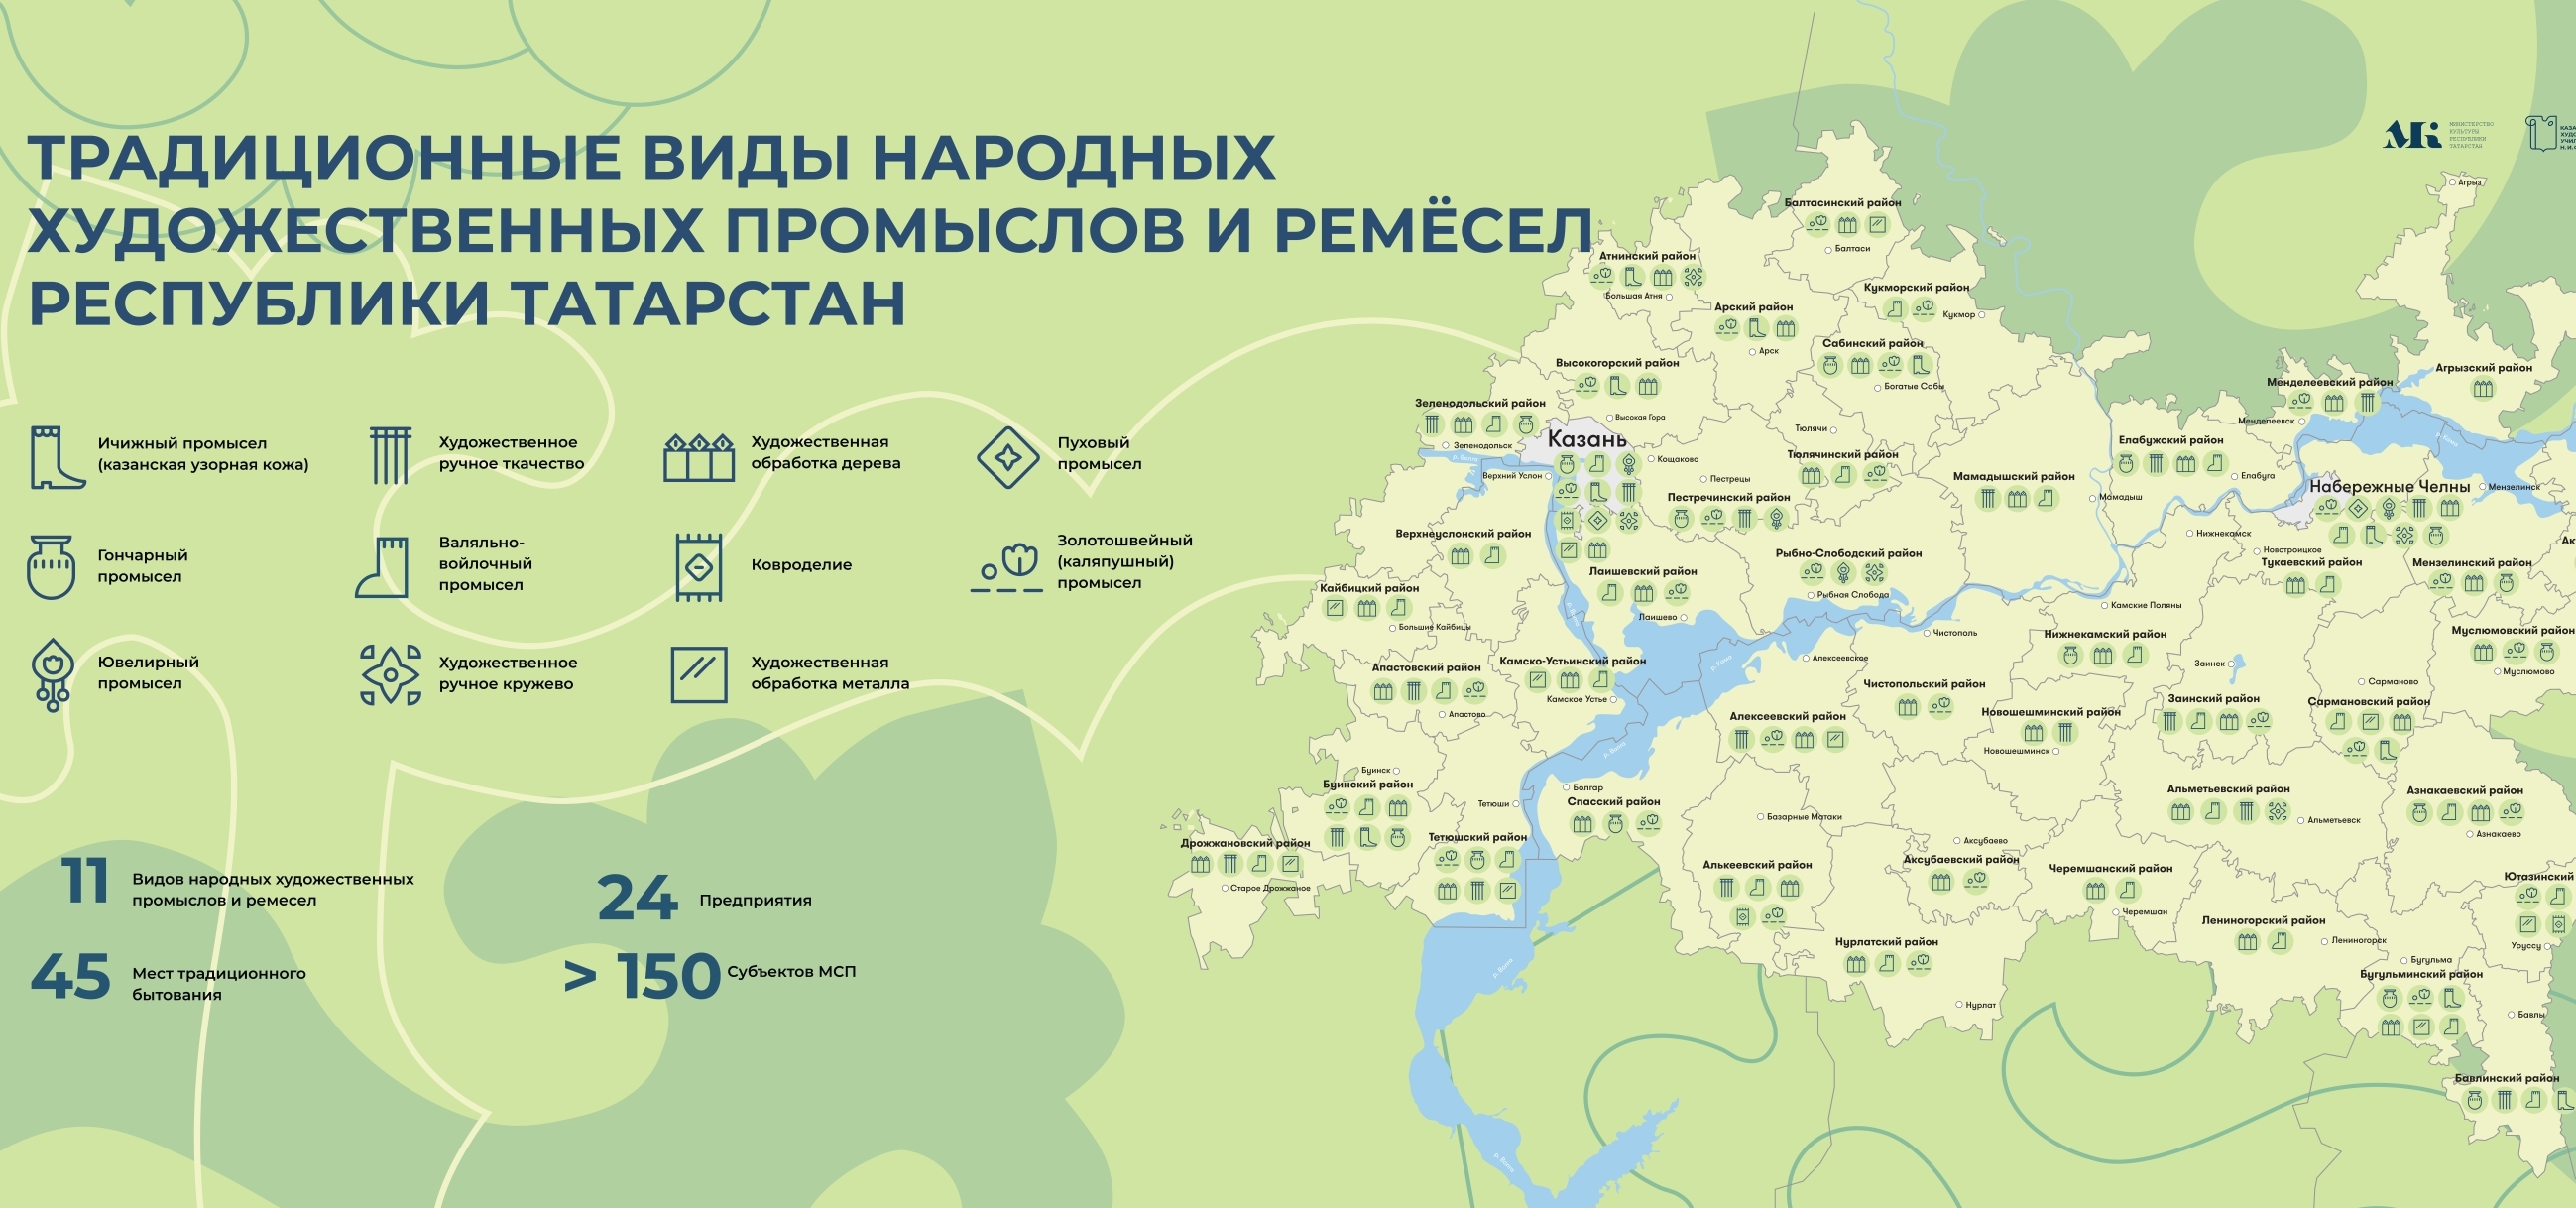 В Татарстане создана карта традиционных видов НХП республики